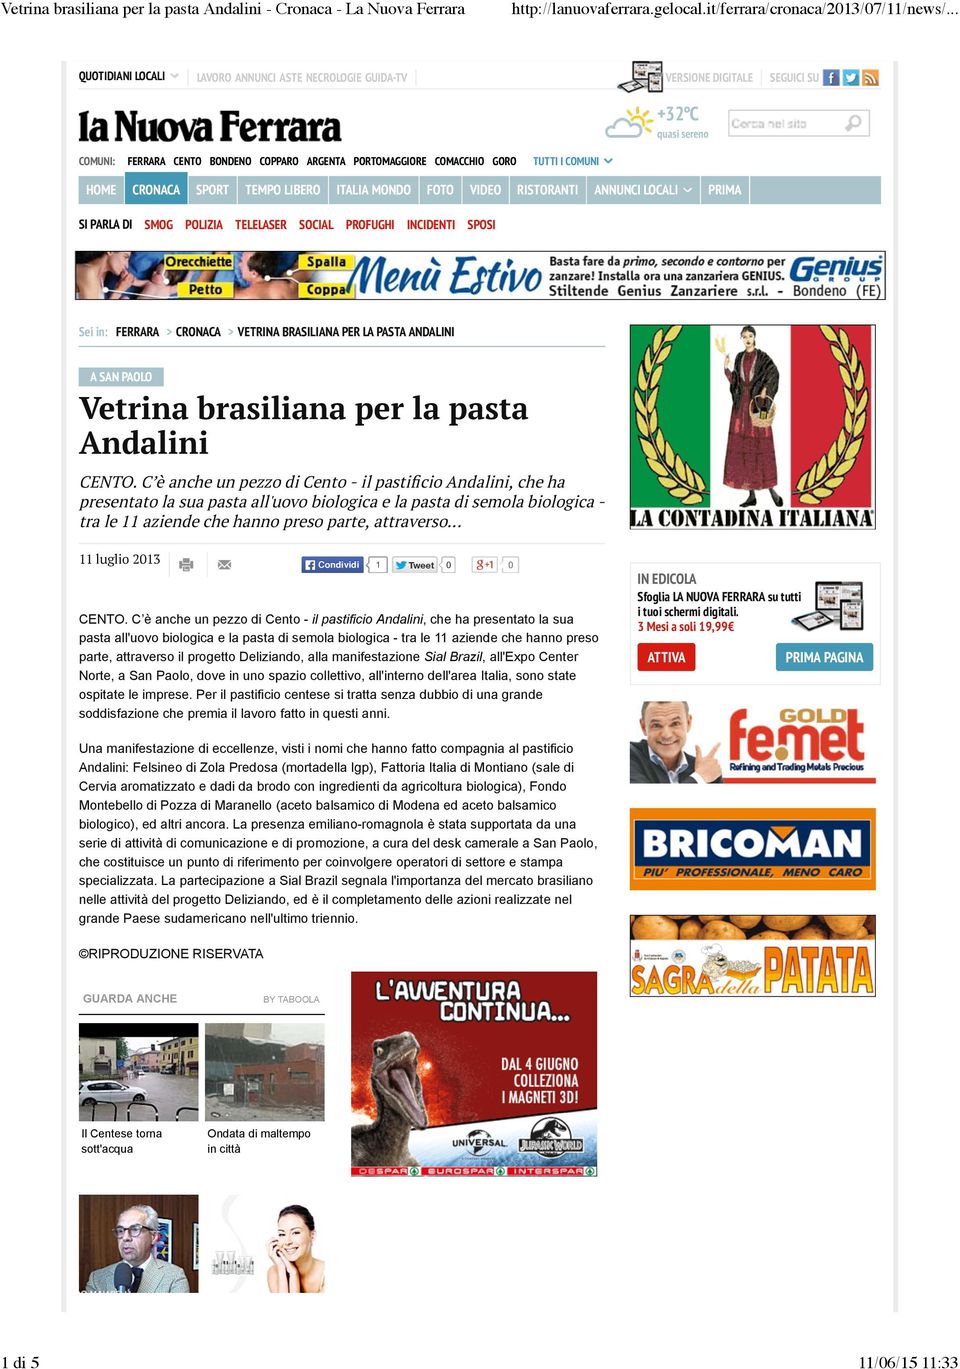 BRASILIANA PER LA PASTA ANDALINI A SAN PAOLO Vetrina brasiliana per la pasta Andalini CENTO.